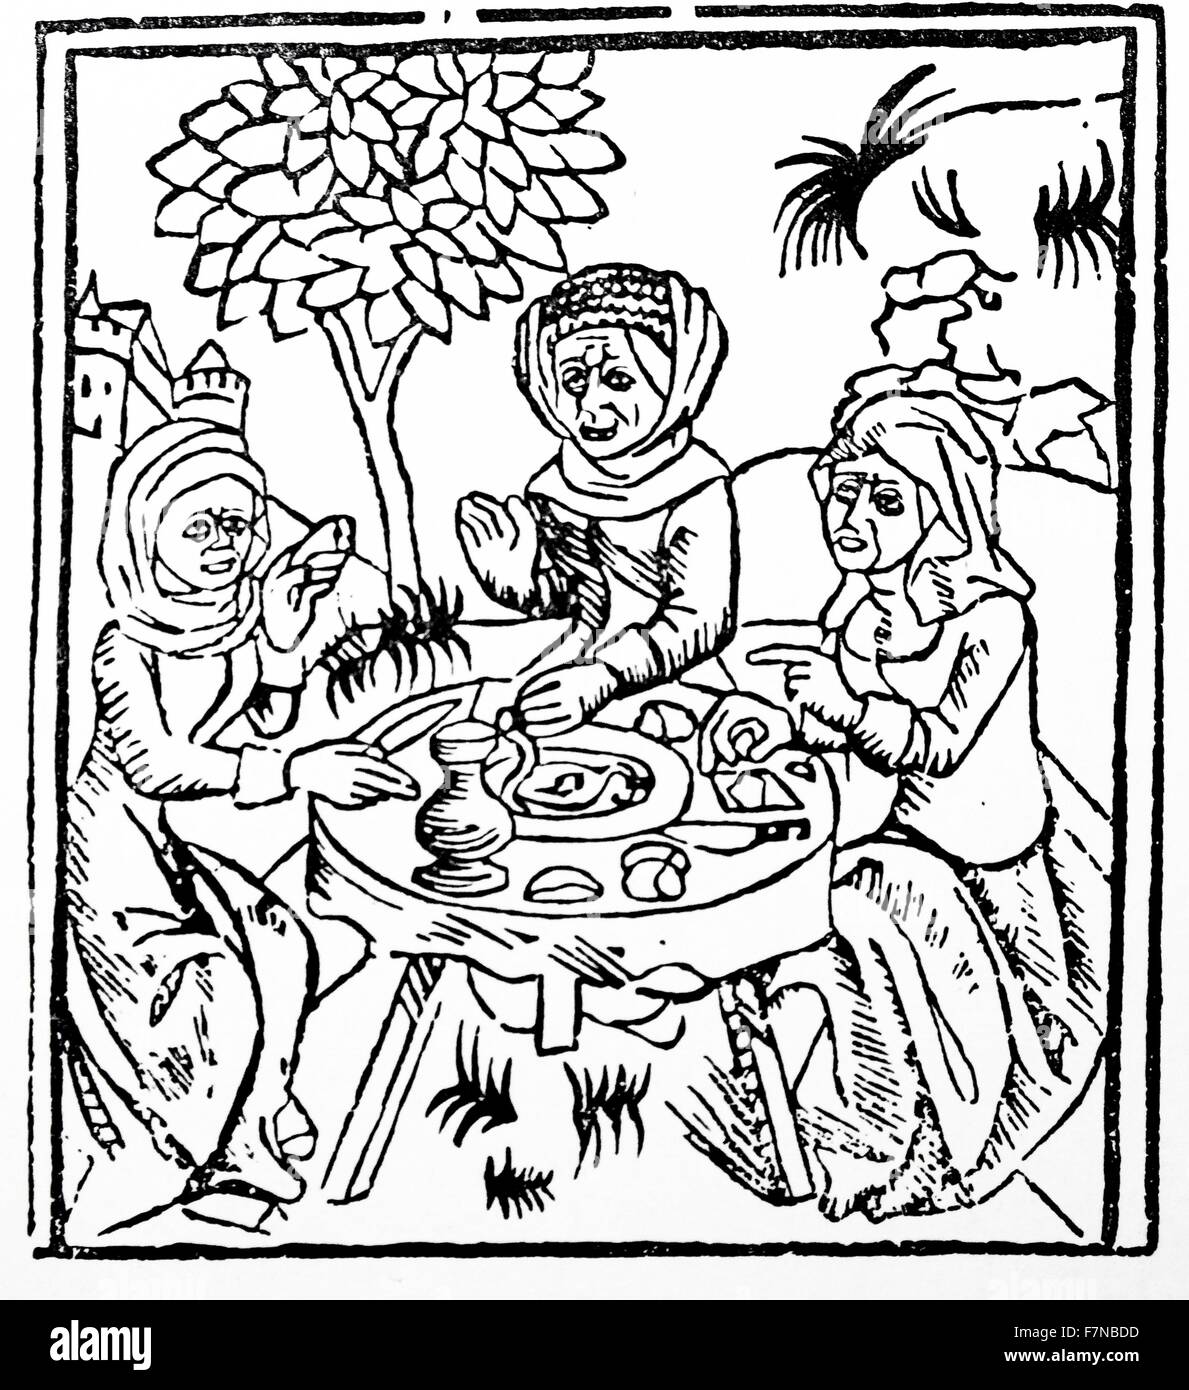 Ulrich Molitor (c. 1442, starb 1507) Rechtswissenschaftler. Er schrieb eine frühe Abhandlung über Hexerei, De Lamiis et Pythonicis Mulieribus (von Hexen und Rutengänger Frauen), veröffentlicht im Jahr 1489 Stockfoto